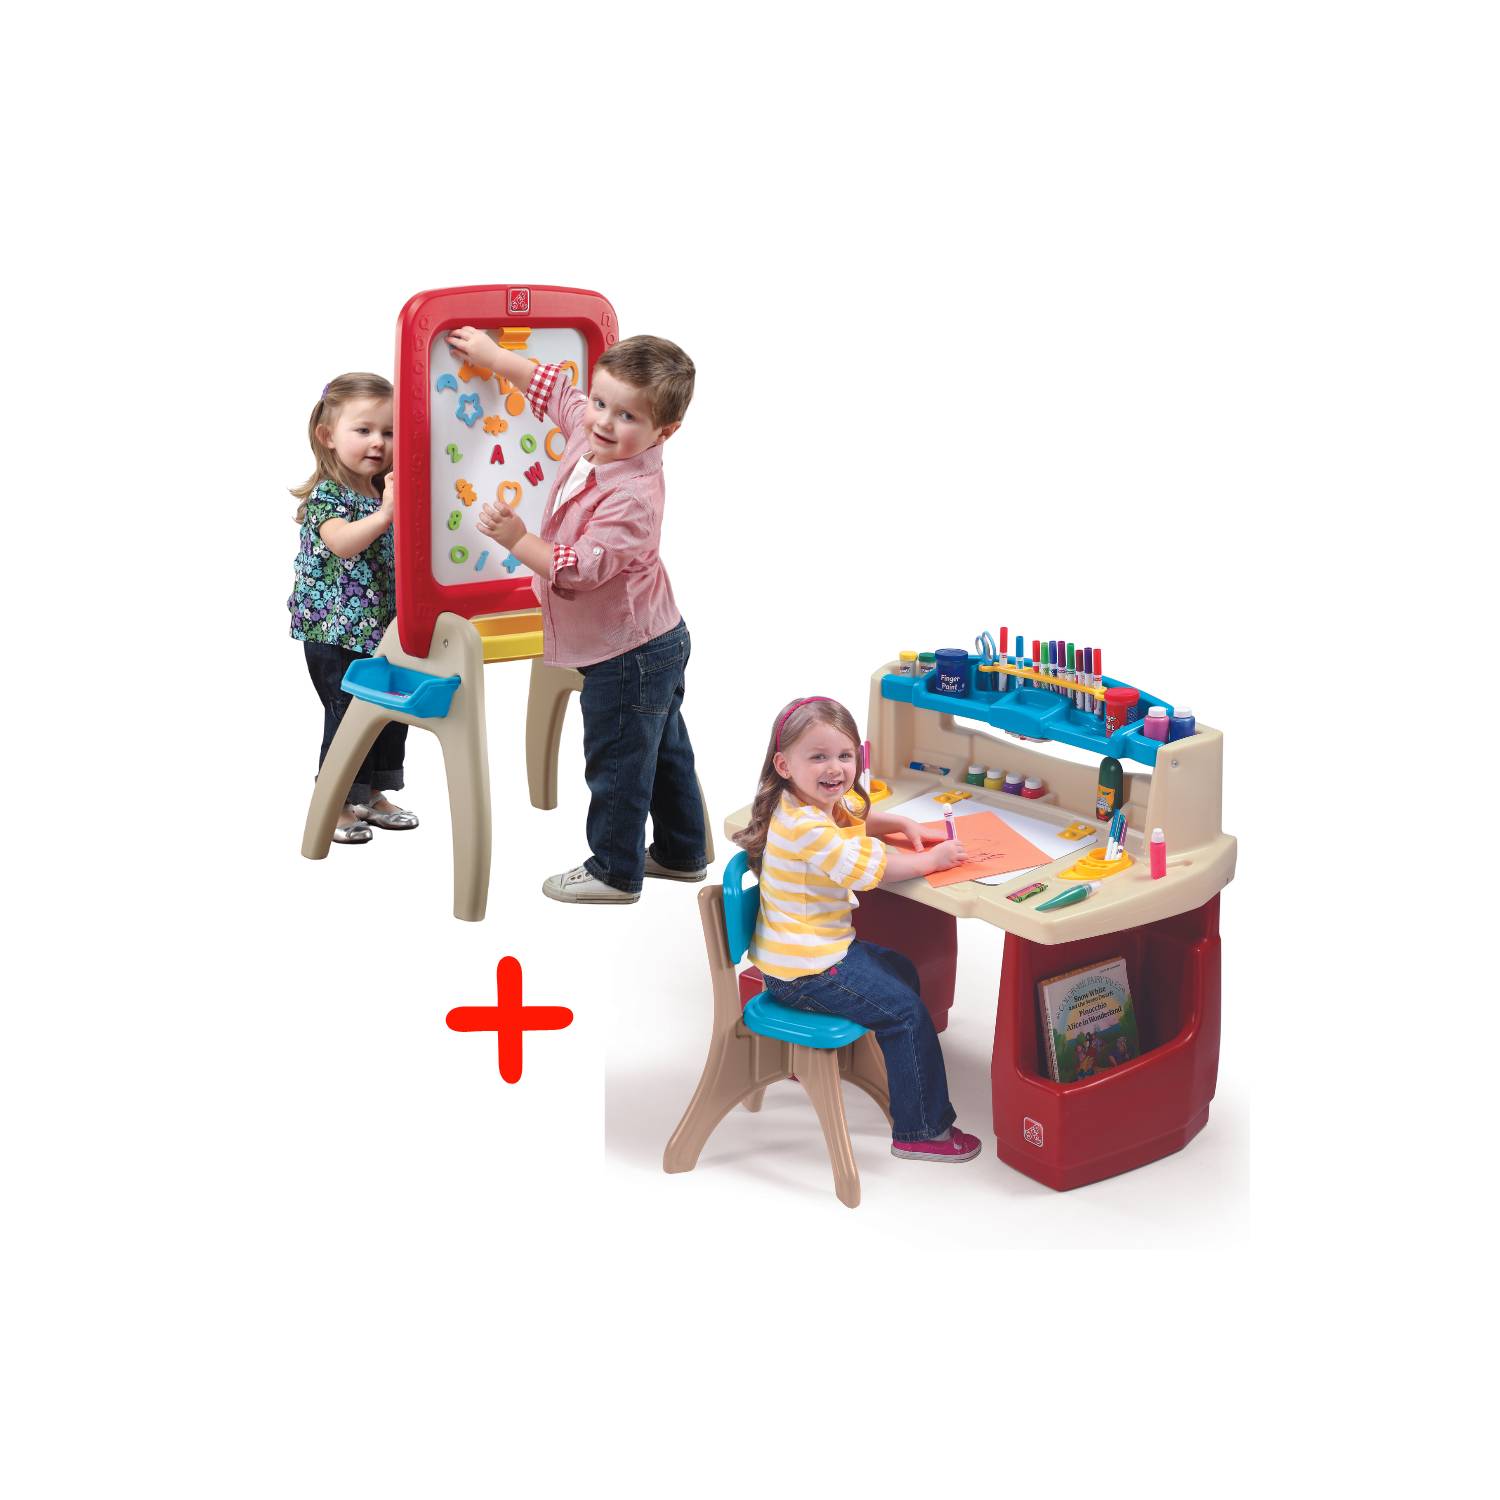 Time-2-Play Kids Montessori Lego - Mesa cuadrada de madera dura roja y azul  de 35 pulgadas con estante, escritorio de madera maciza para niños [patas